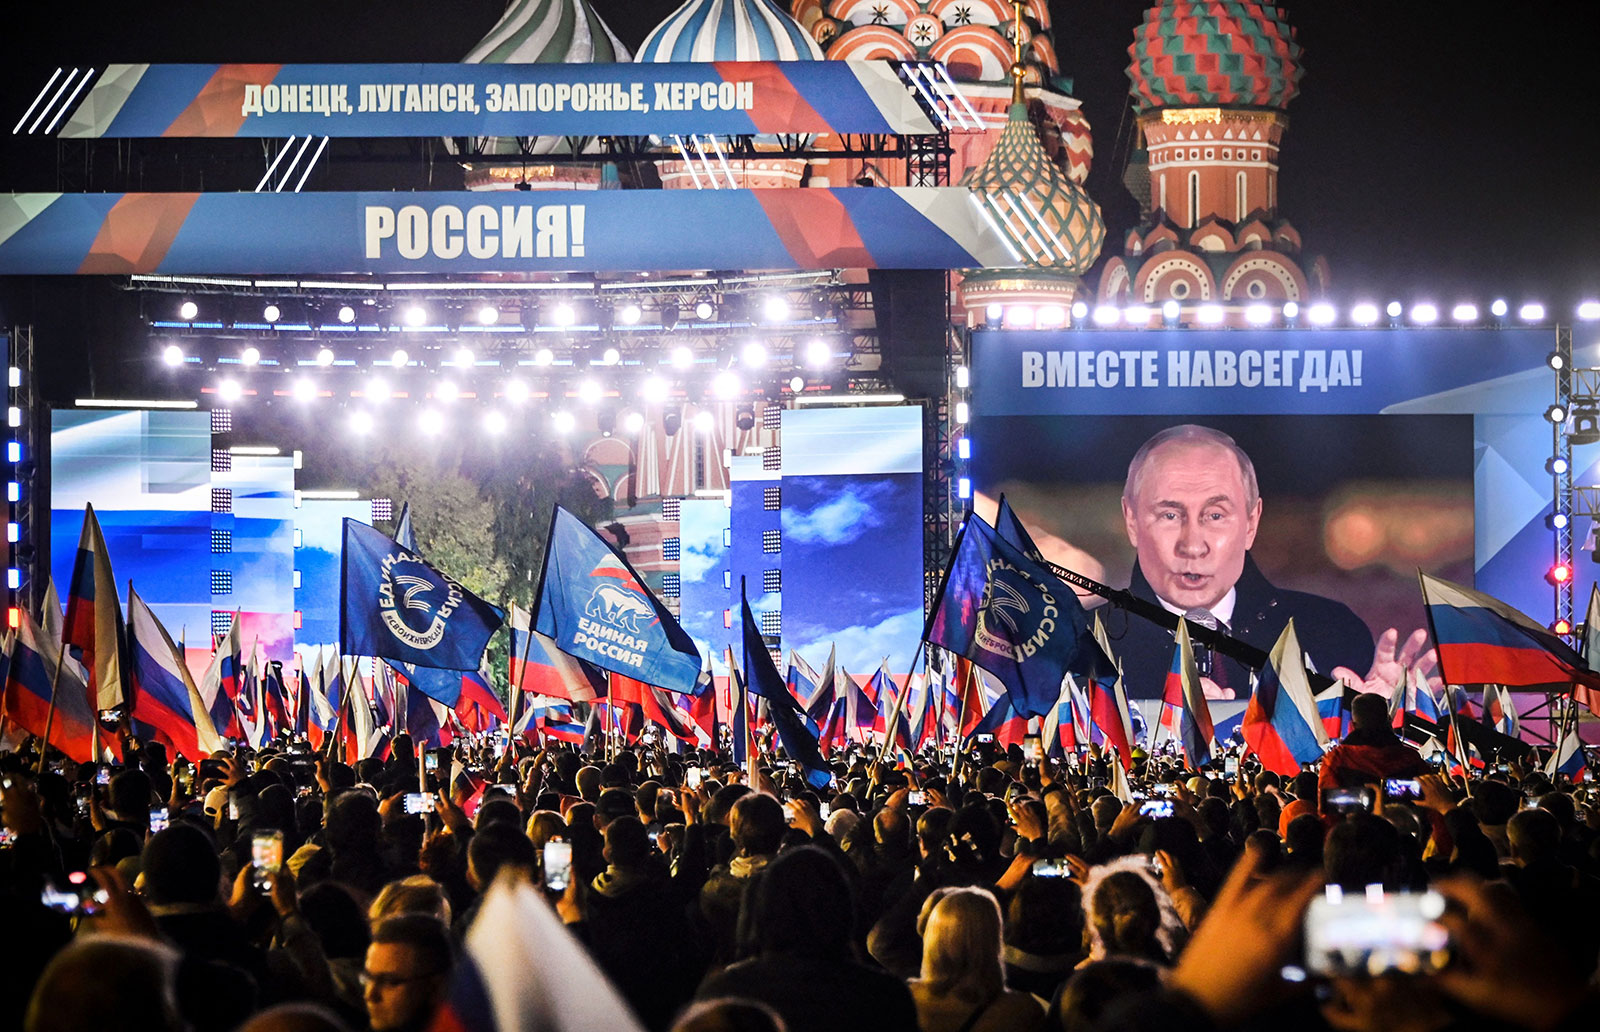 Người dân ở Moscow thể hiện sự ủng hộ việc Nga sáp nhập 4 vùng lãnh thổ Ukraine (ảnh: CNN)